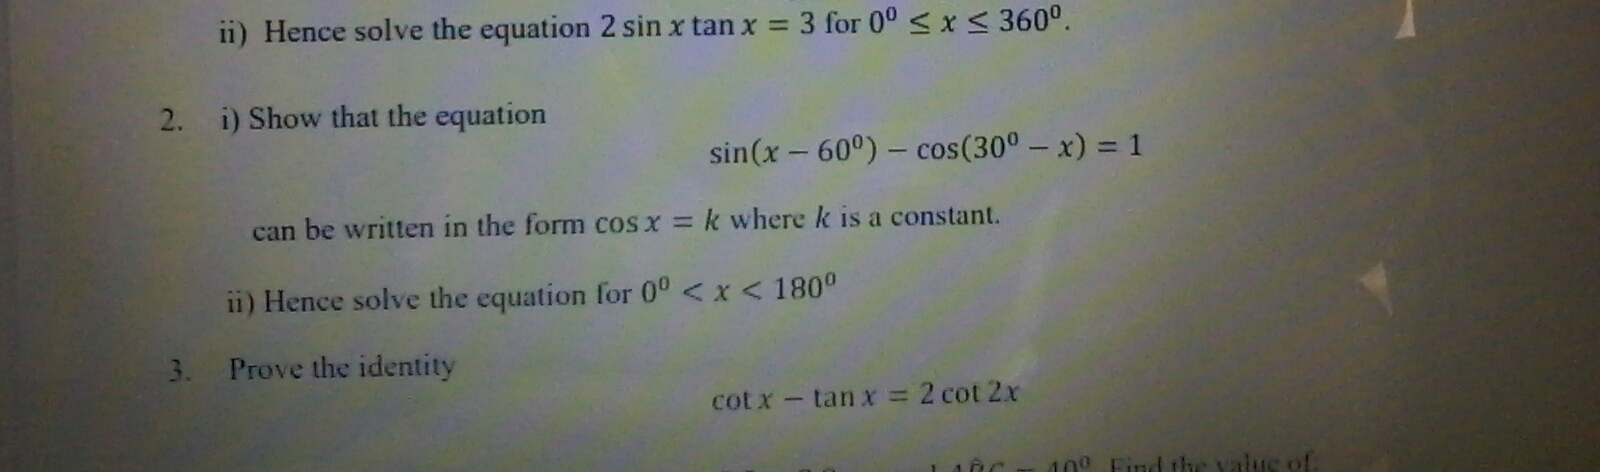 Prove the identity
cot x- tan x = 2 cot 2x
